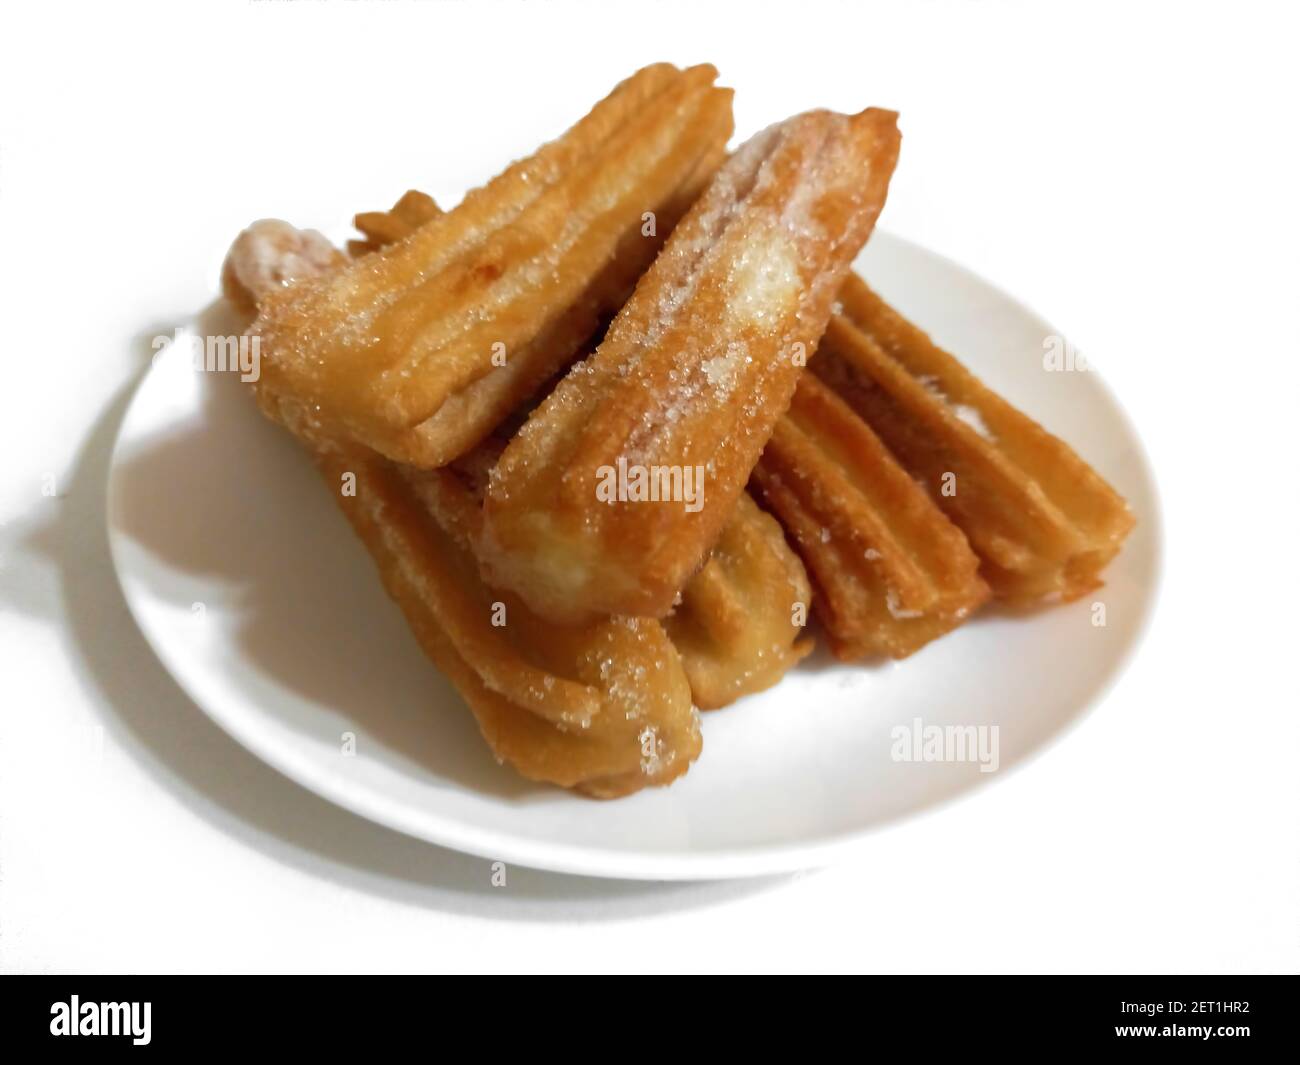 Churros dolci zuccherati, pasta fritta argentina tradizionale di origine spagnola, su piastra isolata su fondo bianco. Angolo alto. Messa a fuoco selettiva Foto Stock